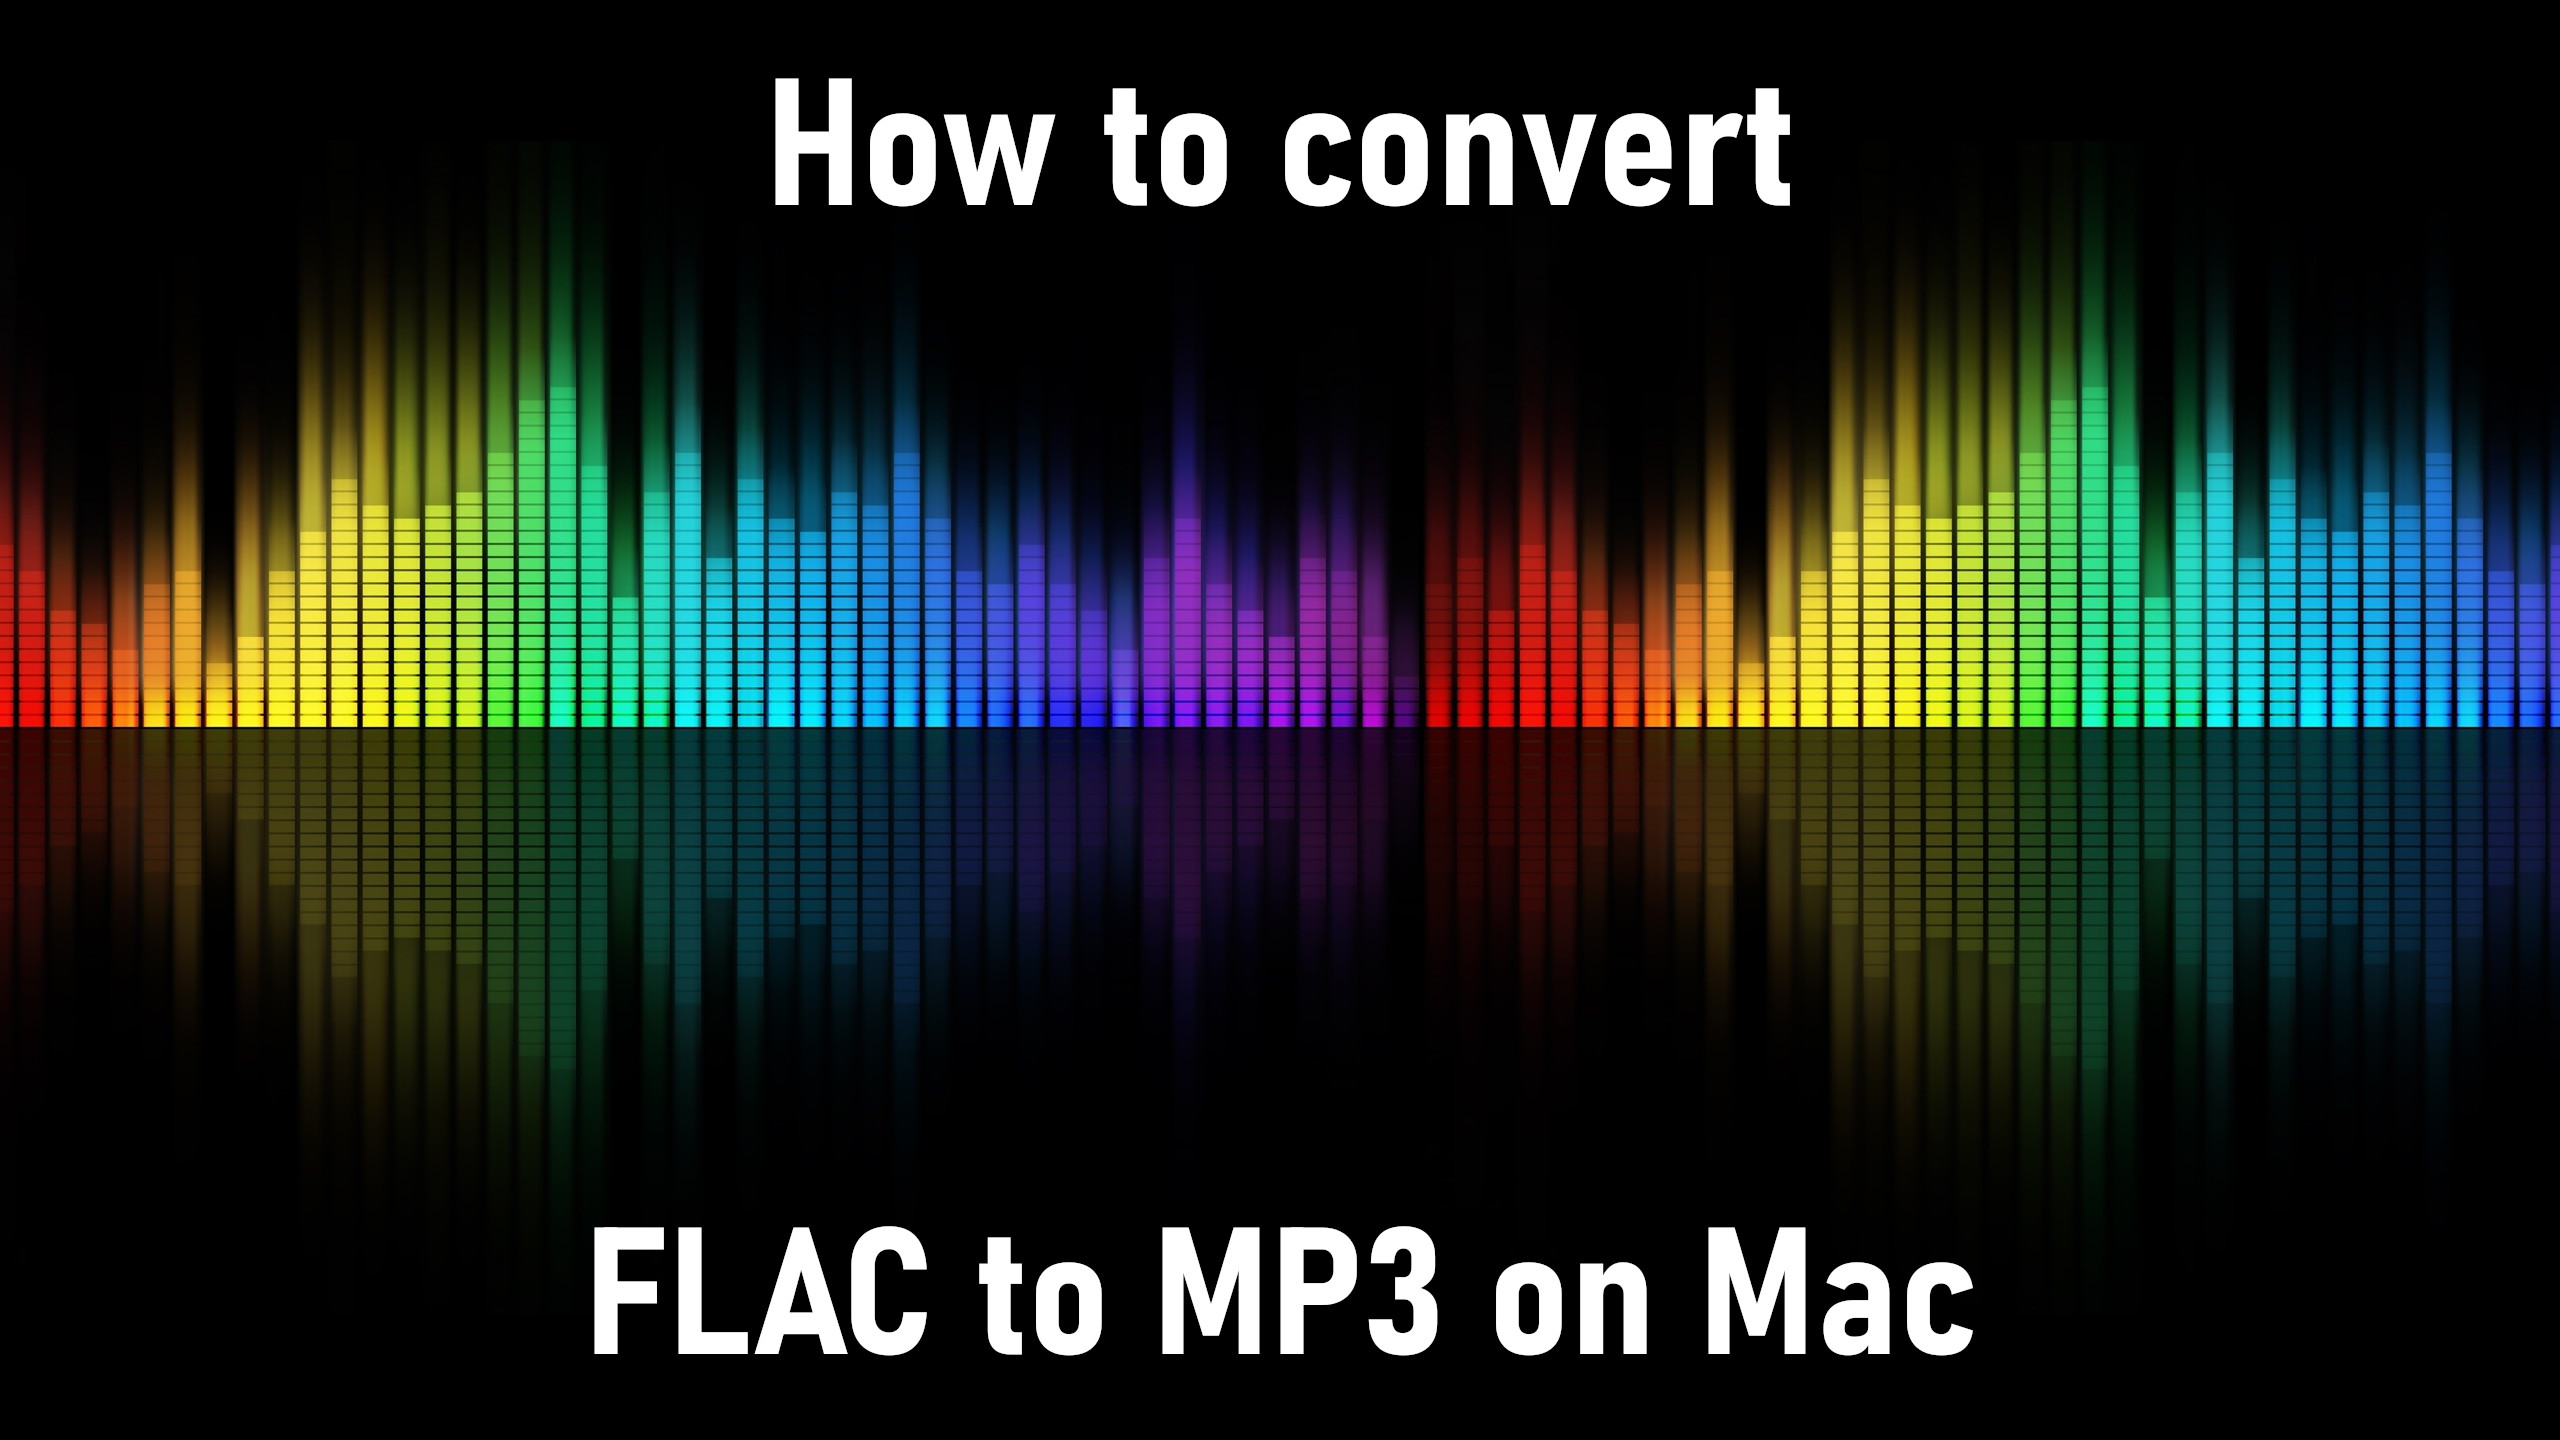 So konvertieren Sie FLAC in MP3 auf dem Mac